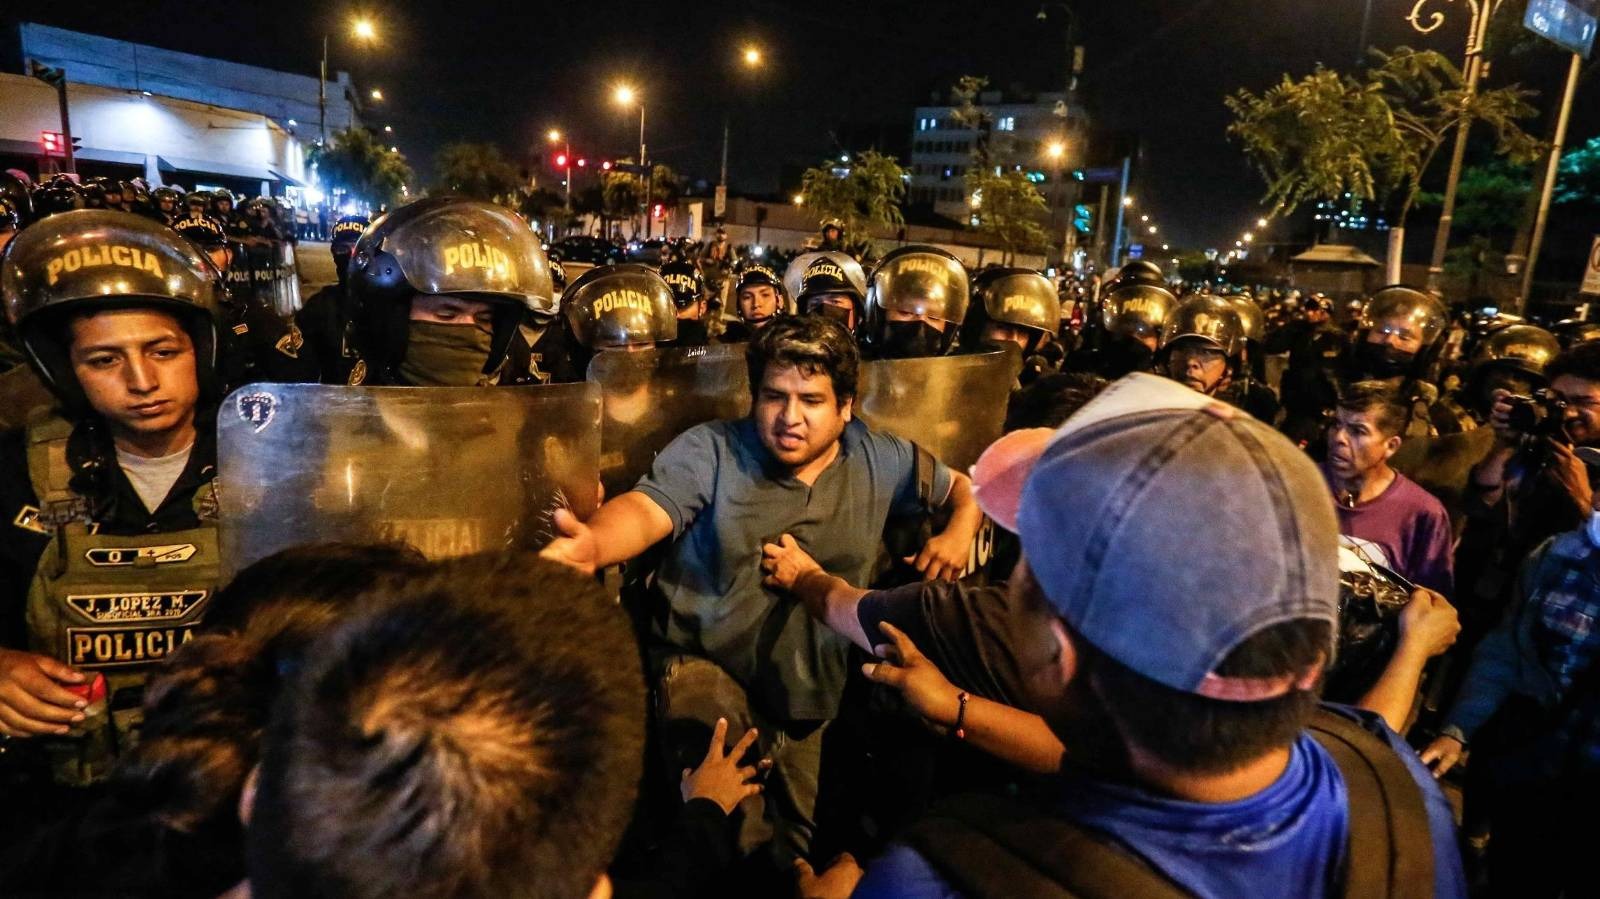 ဆန္ဒပြမှုတွေ အရှိန်မြင့်နေတဲ့ မြို့ကြီးတွေမှာ အရေးပေါ် အခြေအနေ ကြေညာချက်ကို ပီရူး အစိုးရ သက်တမ်းတိုး